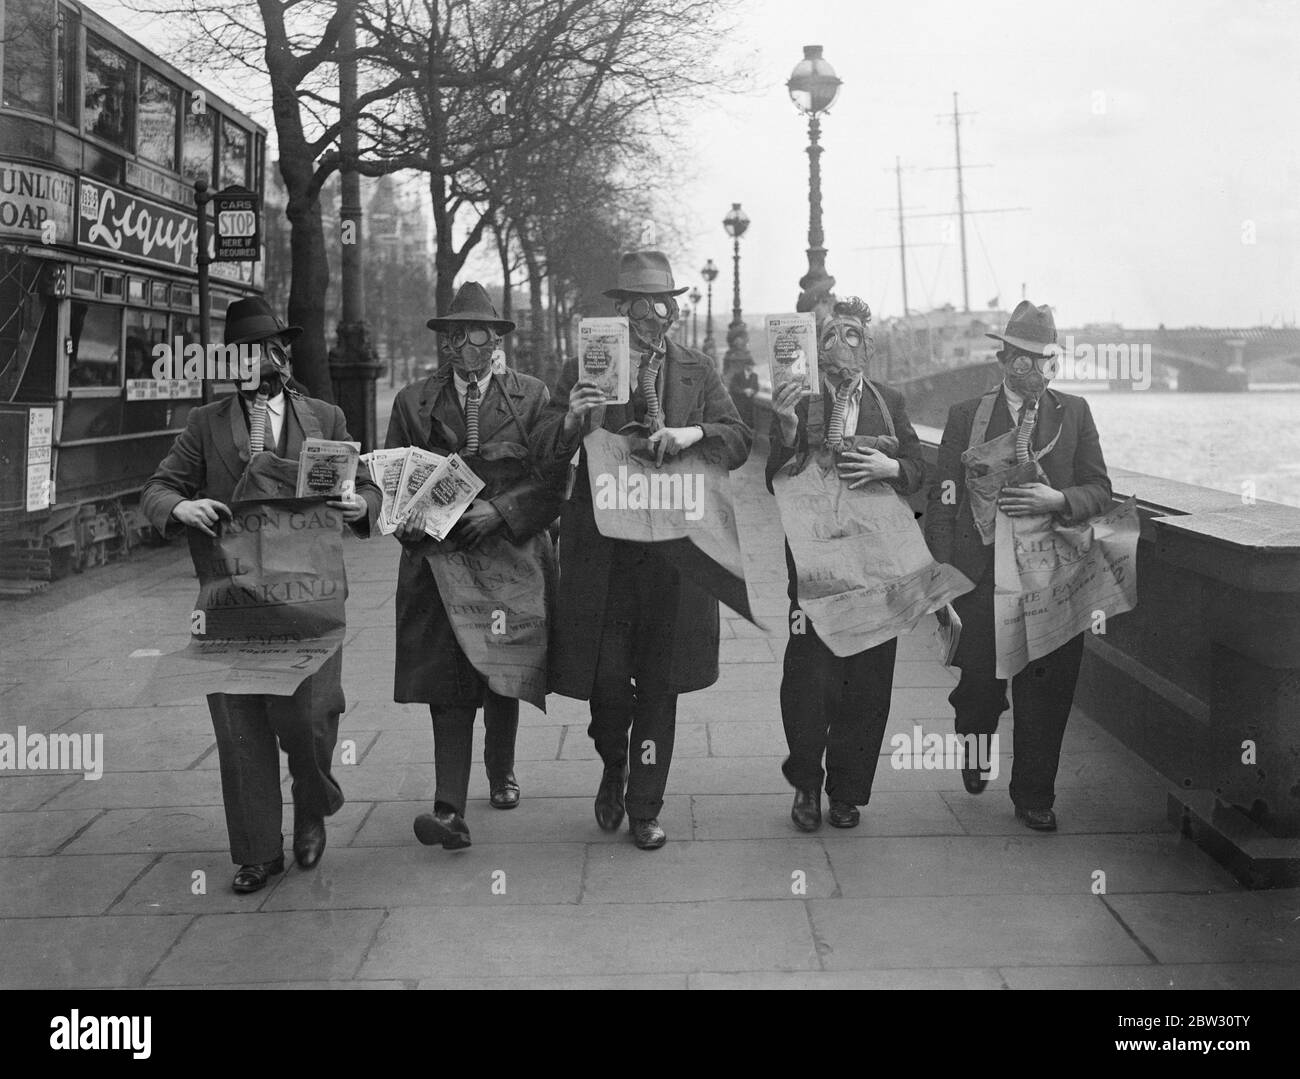 Gasmaskierte Demonstranten veranstalten die Maiparade in London. Demonstranten tragen Gasmasken und tragen Plakate drängen auf die Abschaffung der Gas-und chemischen Krieg, leitete die Maifest Parade durch London, die von der Uferstraße begann. Demonstranten weraing Gasmasken marschieren entlang der Embankment, London bei der Demonstration am 1. Mai. 29. April 1932 Stockfoto